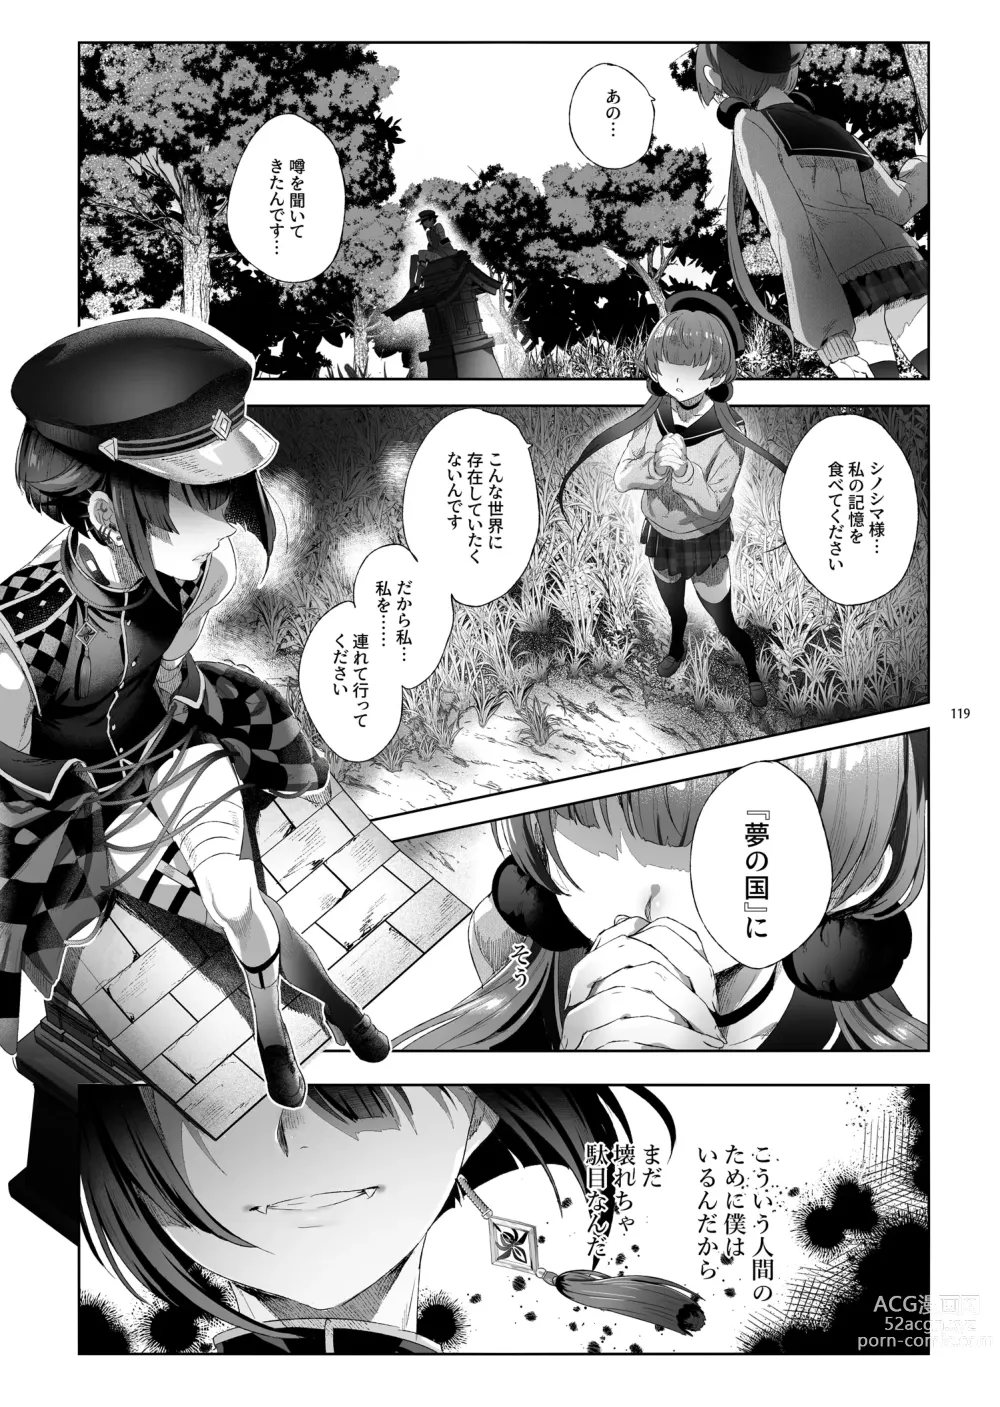 Page 116 of doujinshi Shounen Toshi Densetsu Shinoshima Raise Gendai Hen